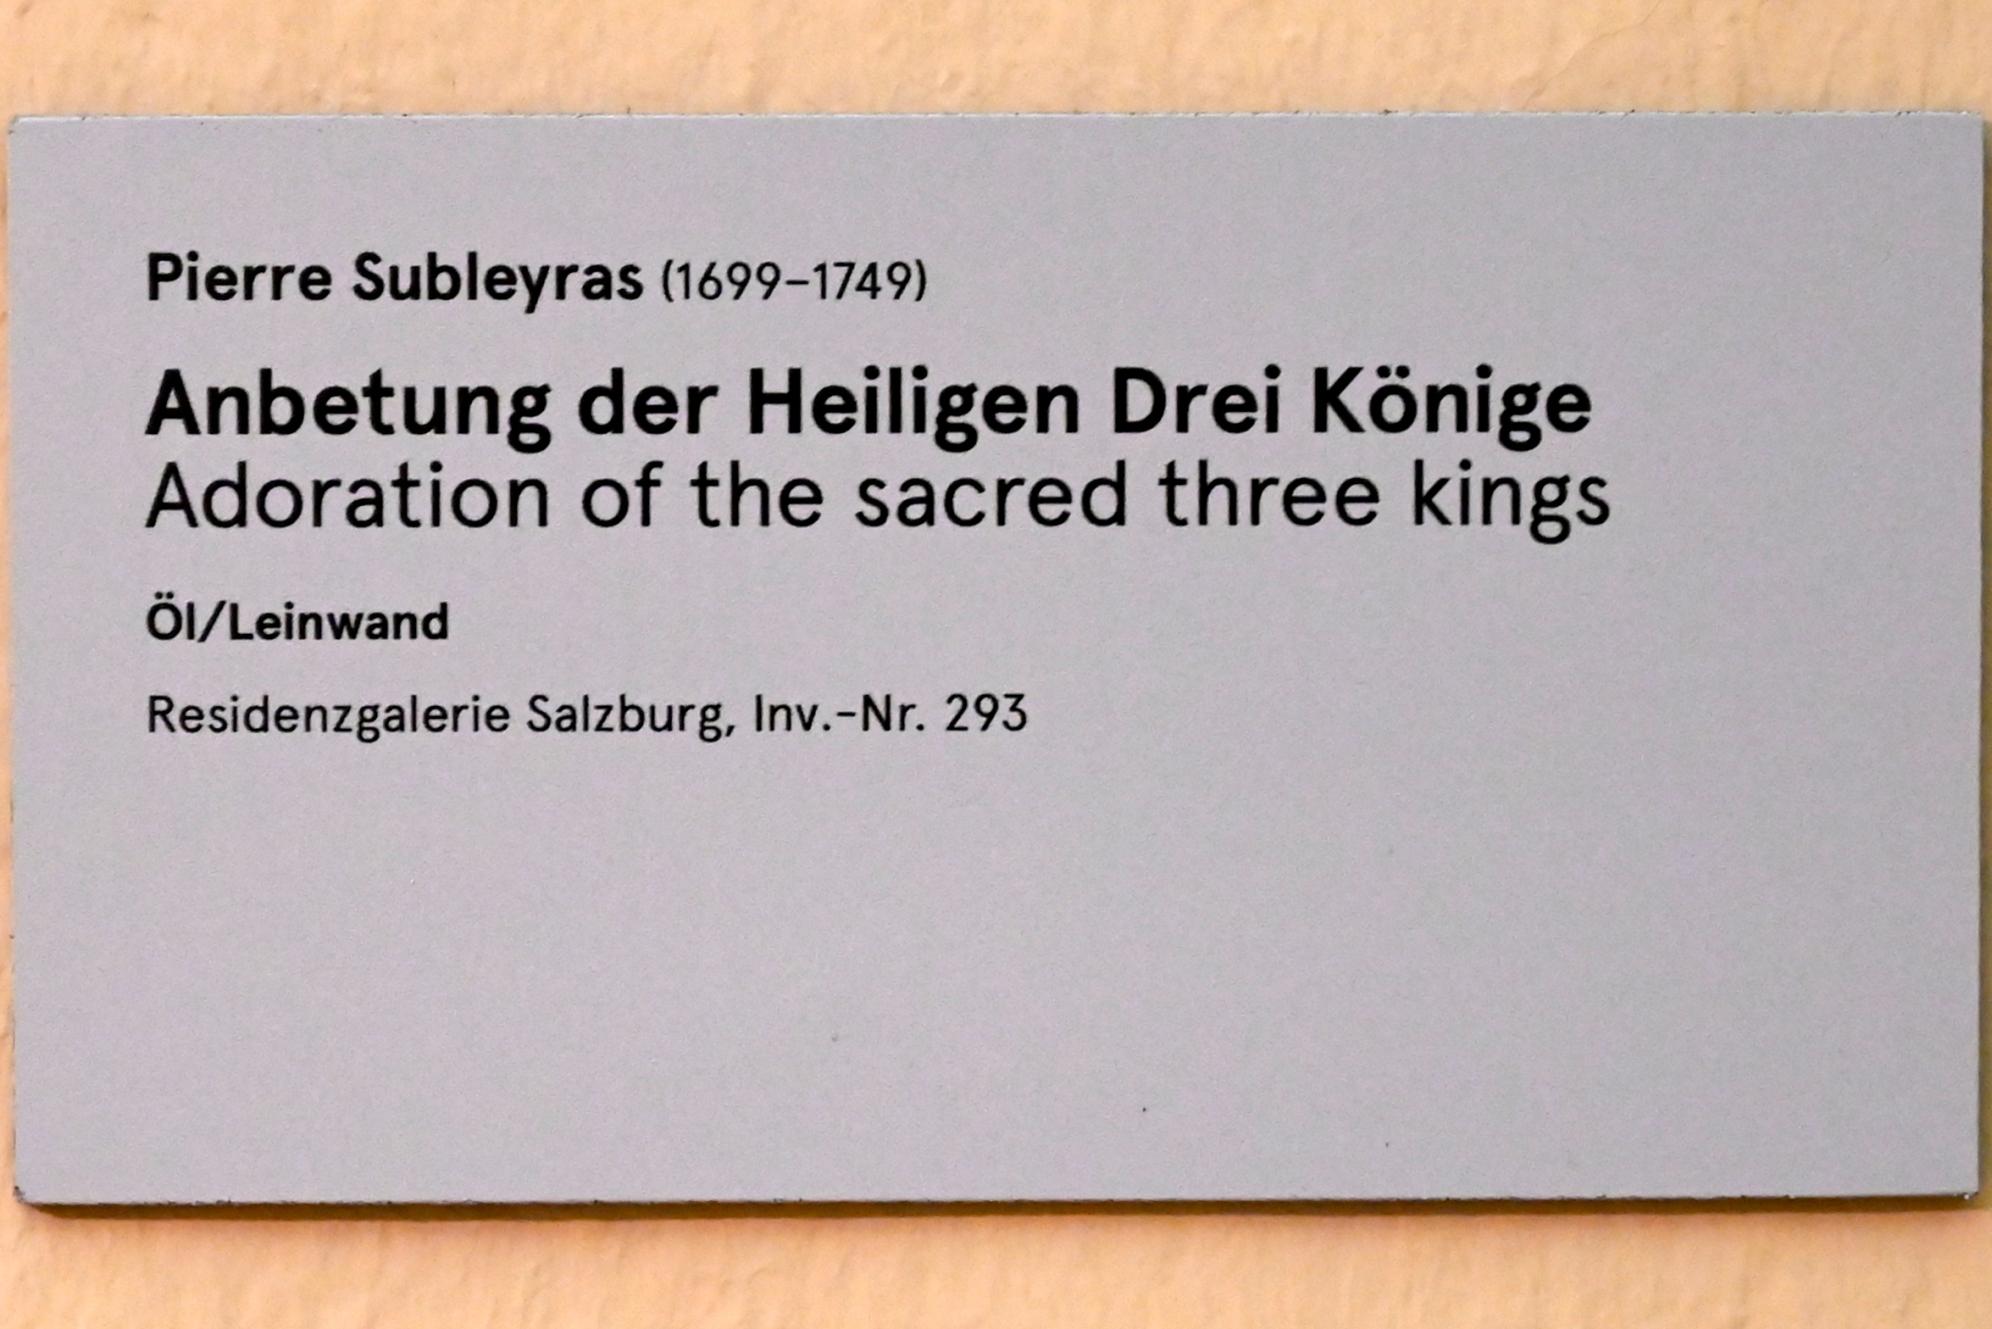 Pierre Subleyras (1733–1747), Anbetung der Heiligen Drei Könige, Salzburg, Salzburger Residenz, Residenzgalerie, Undatiert, Bild 2/2